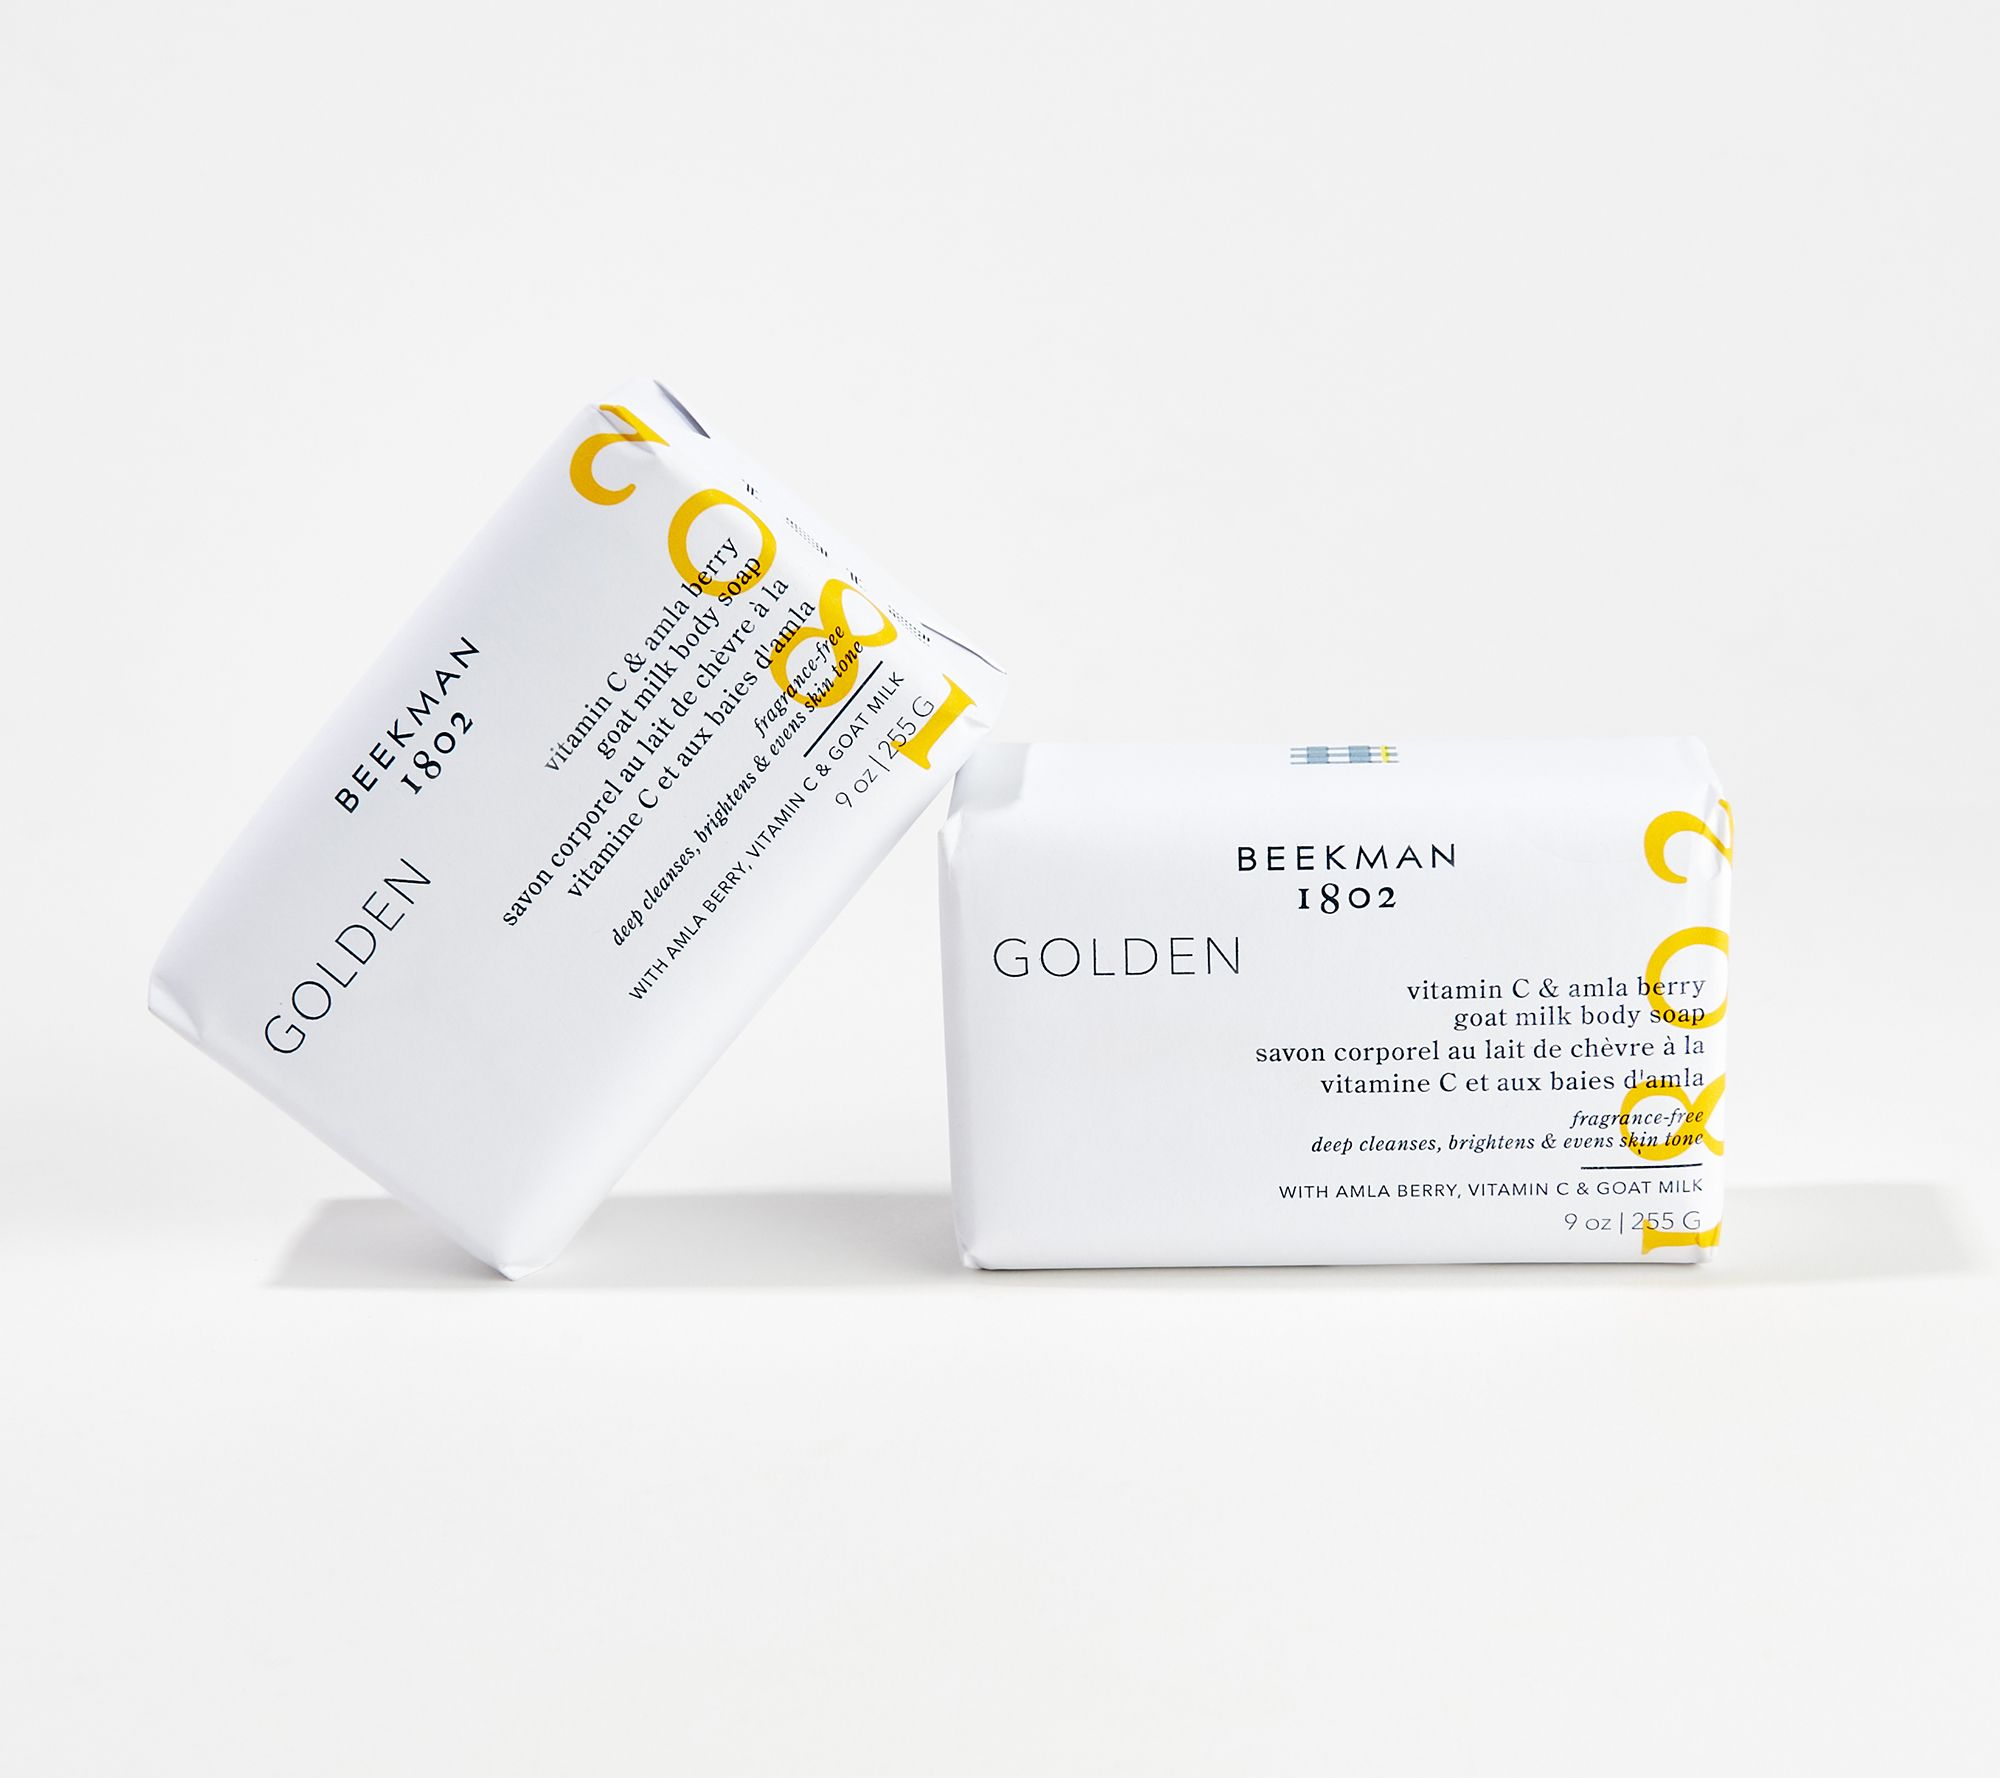 Beekman 1802 9-oz Golden Vitamin C Goat Milk Bar Soap Duo - QVC.com